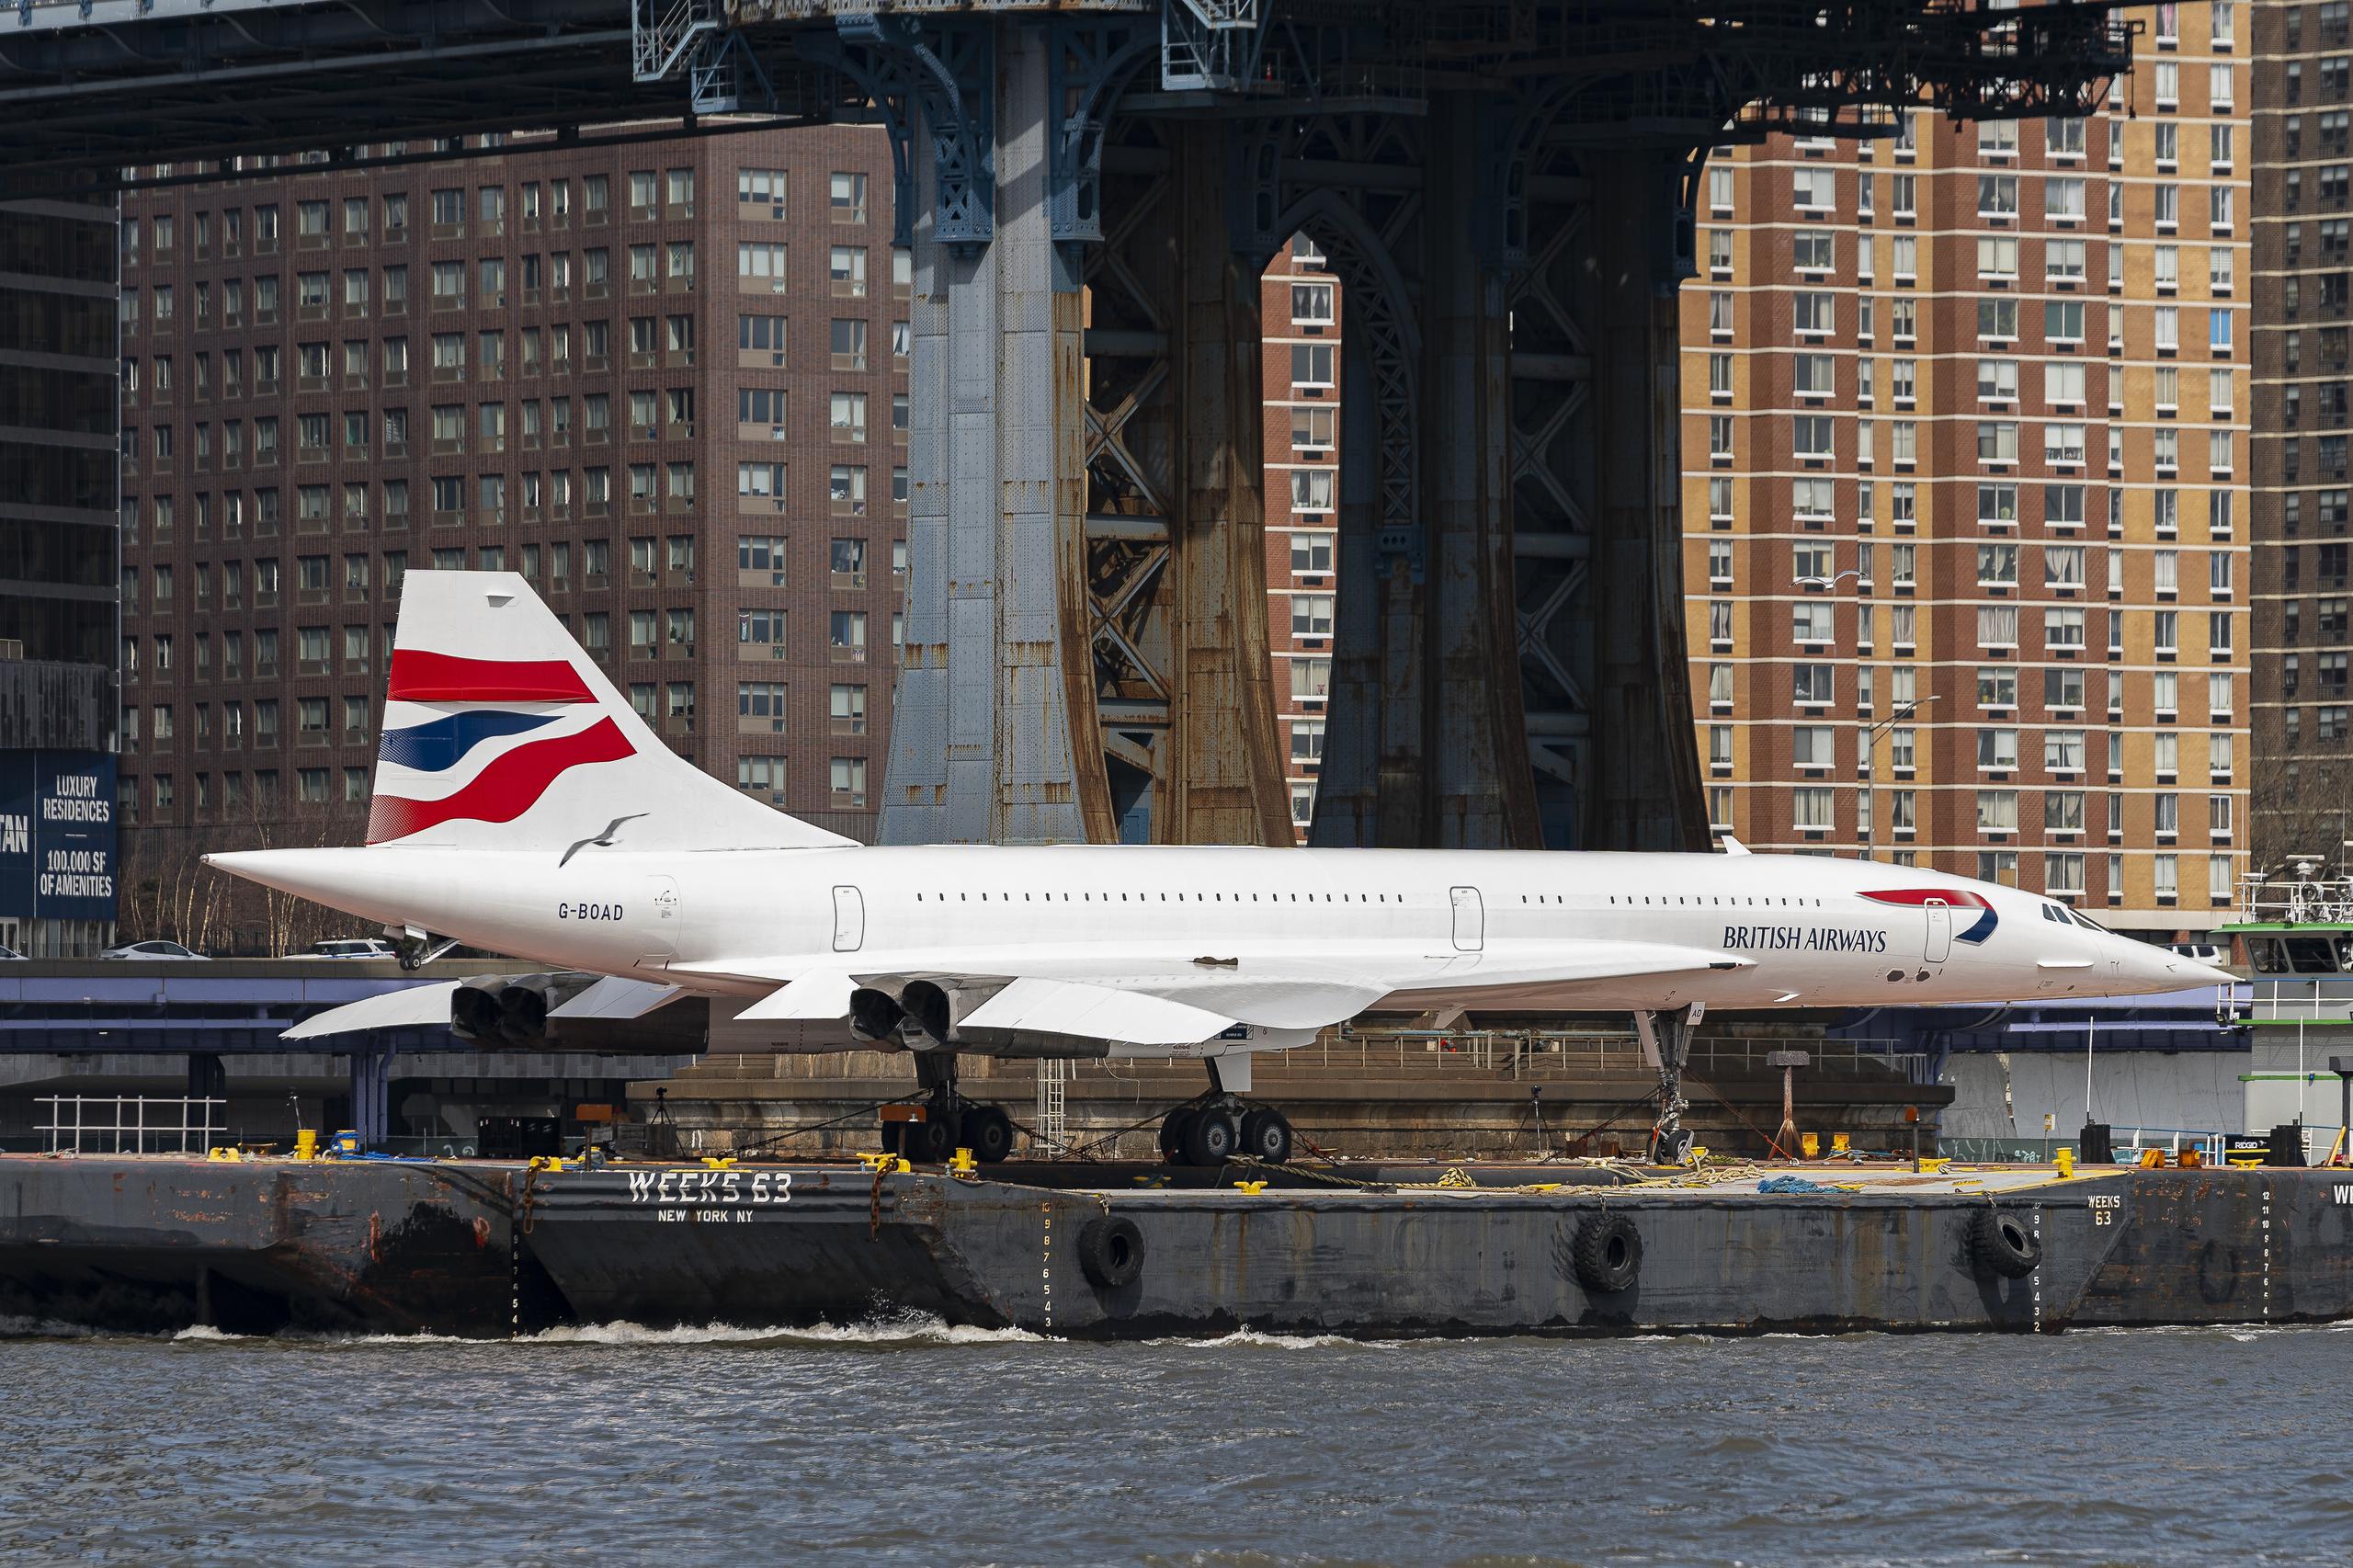 El Concorde del Museo Intrepid todavía mantiene el récord del cruce transatlántico más rápido hecho por un avión de pasajeros, con 2 horas, 52 minutos y 59 segundos, del aeropuerto de Heathrow al JFK.